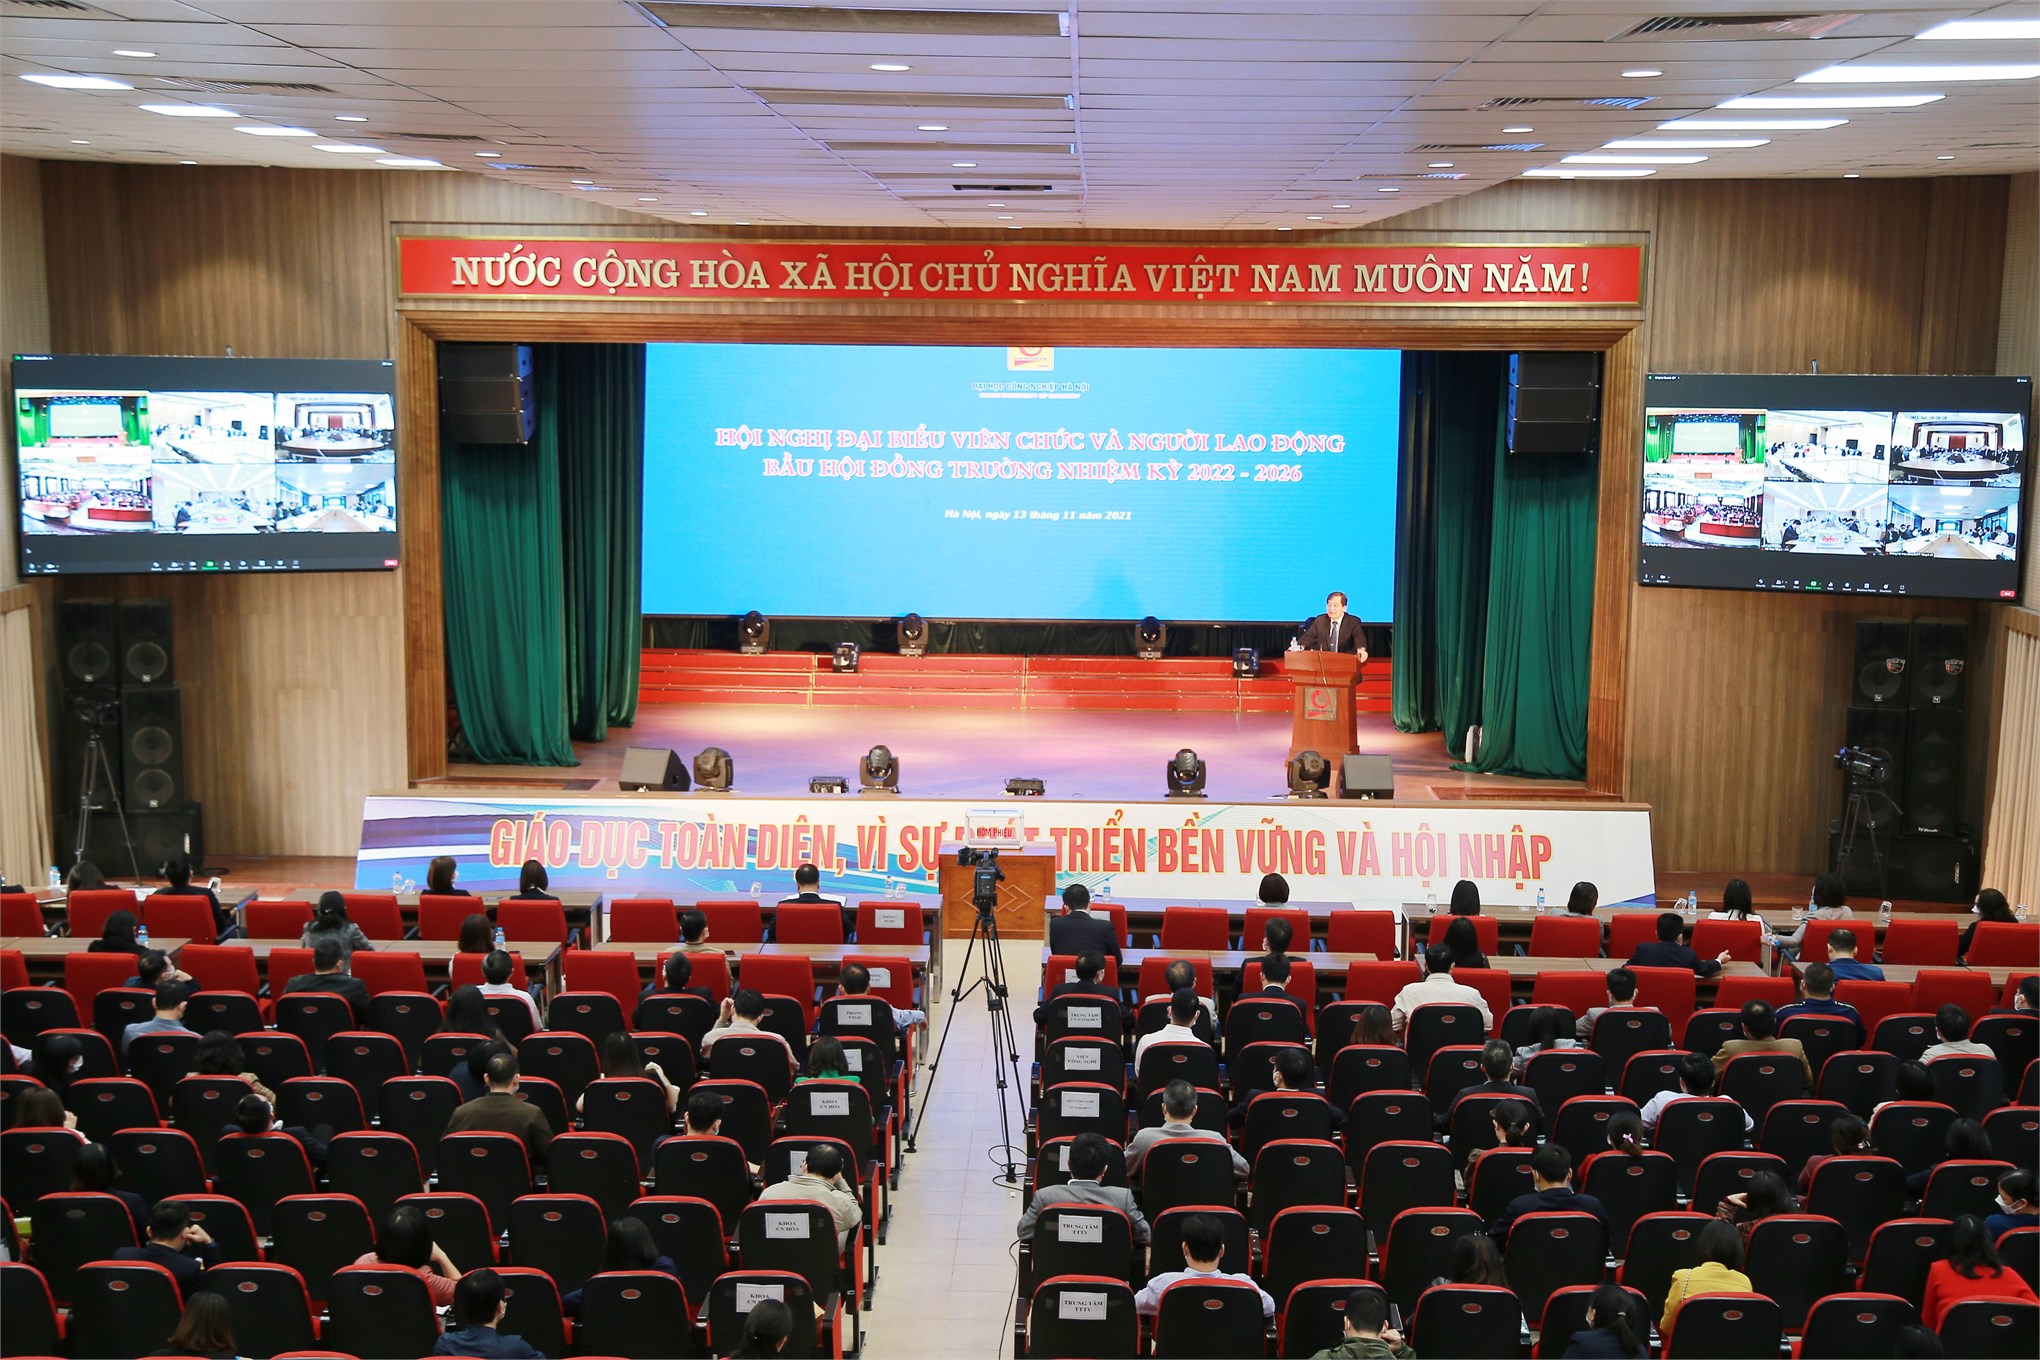 Hội nghị đại biểu viên chức, người lao động bầu Hội đồng trường, trường Đại học Công nghiệp Hà Nội nhiệm kỳ 2022 - 2026